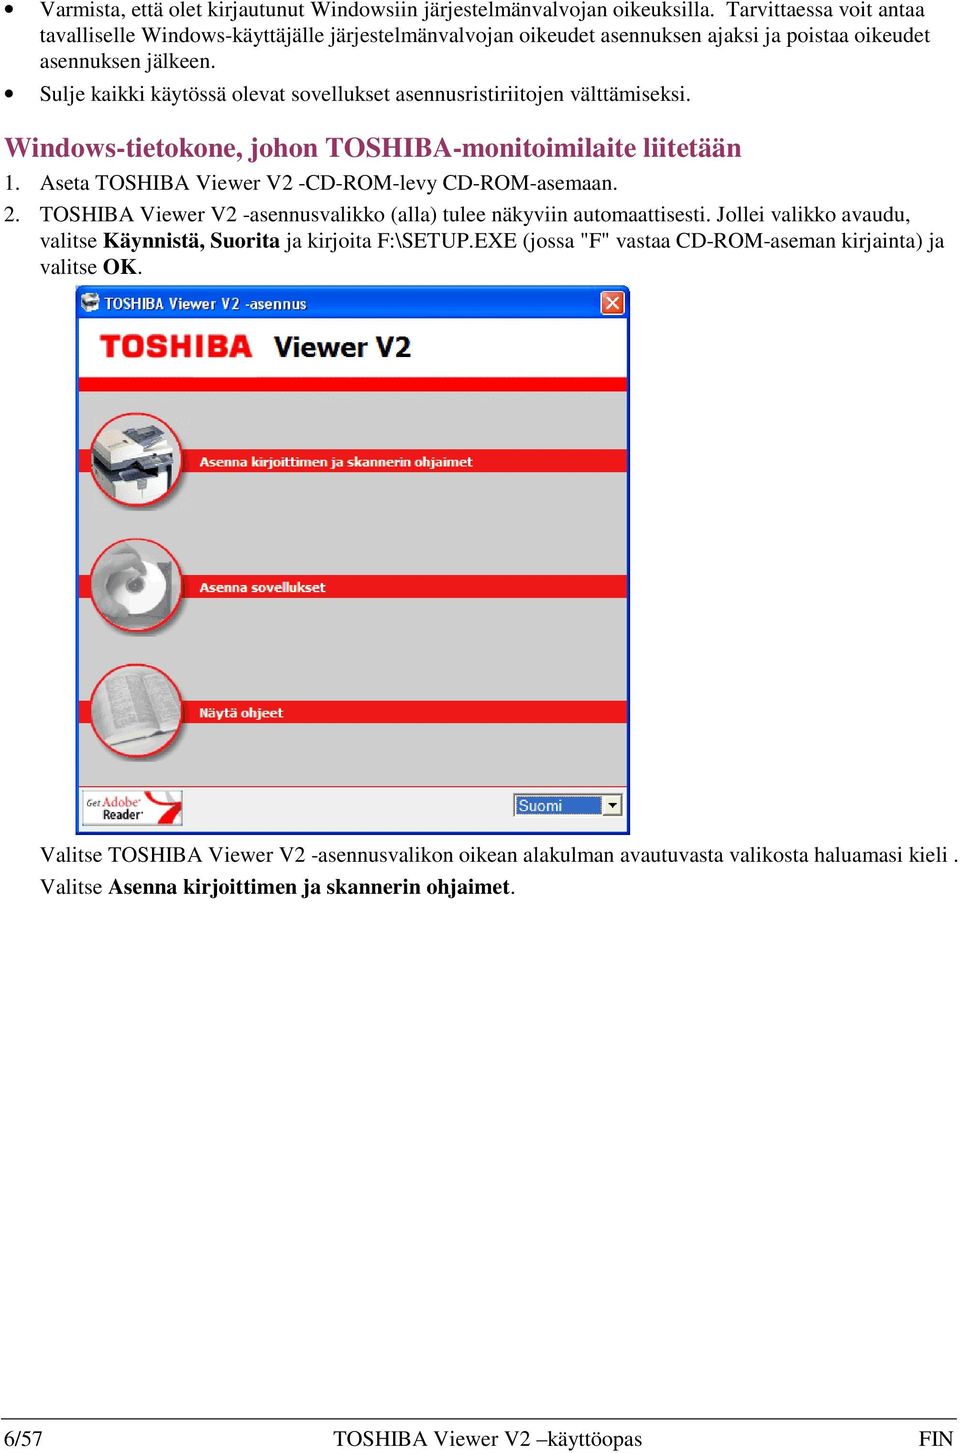 Sulje kaikki käytössä olevat sovellukset asennusristiriitojen välttämiseksi. Windows-tietokone, johon TOSHIBA-monitoimilaite liitetään 1. Aseta TOSHIBA Viewer V2 -CD-ROM-levy CD-ROM-asemaan. 2.